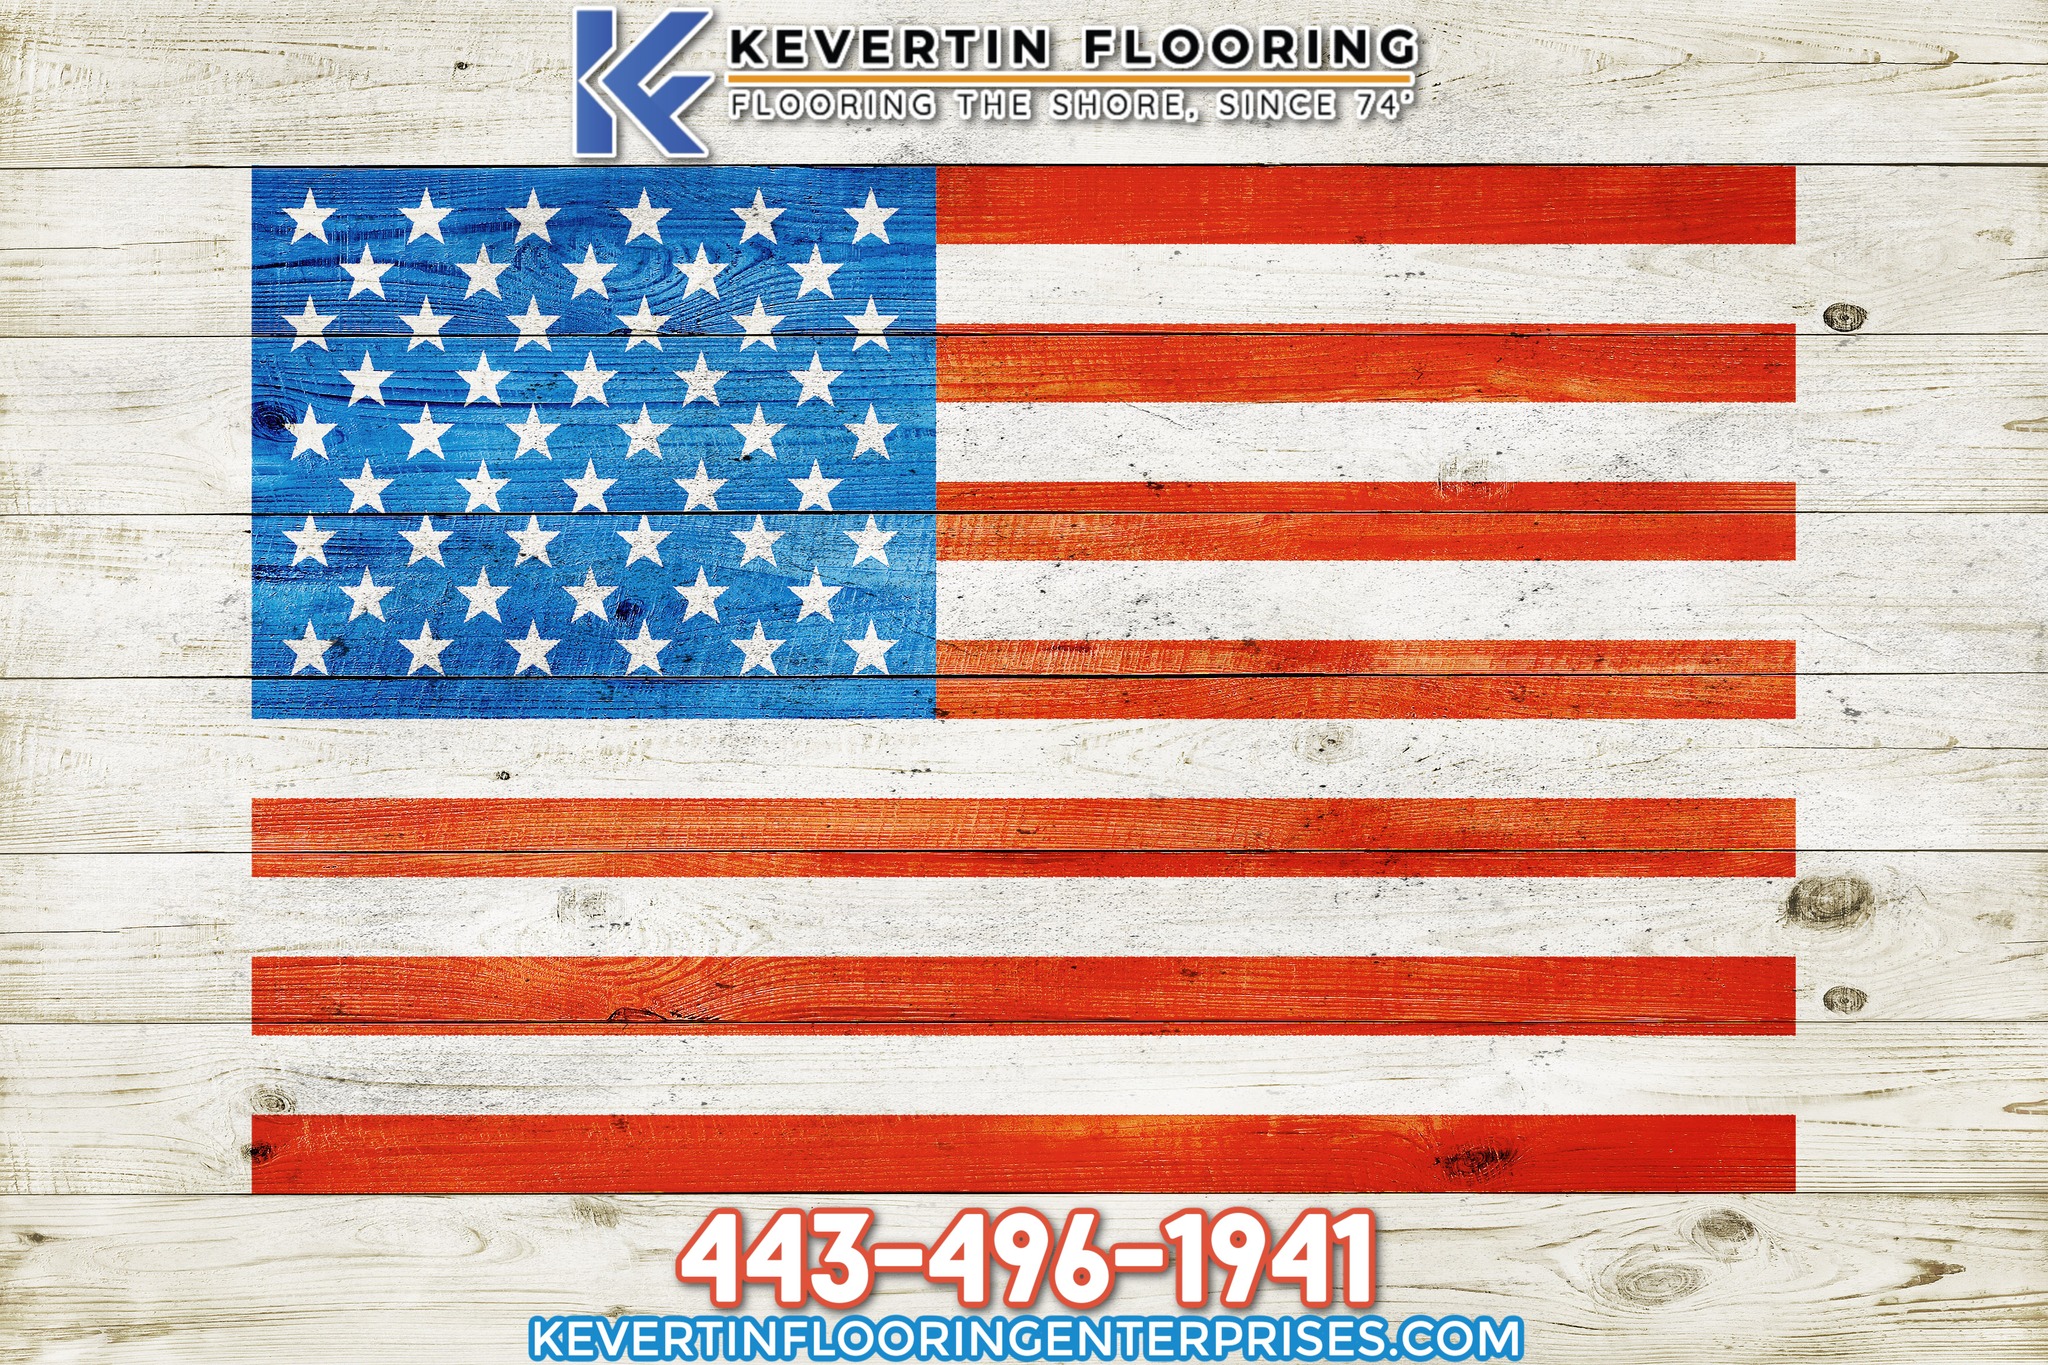 Kevertin Flooring Enterprises 34582 Daisey Rd, Frankford Delaware 19945